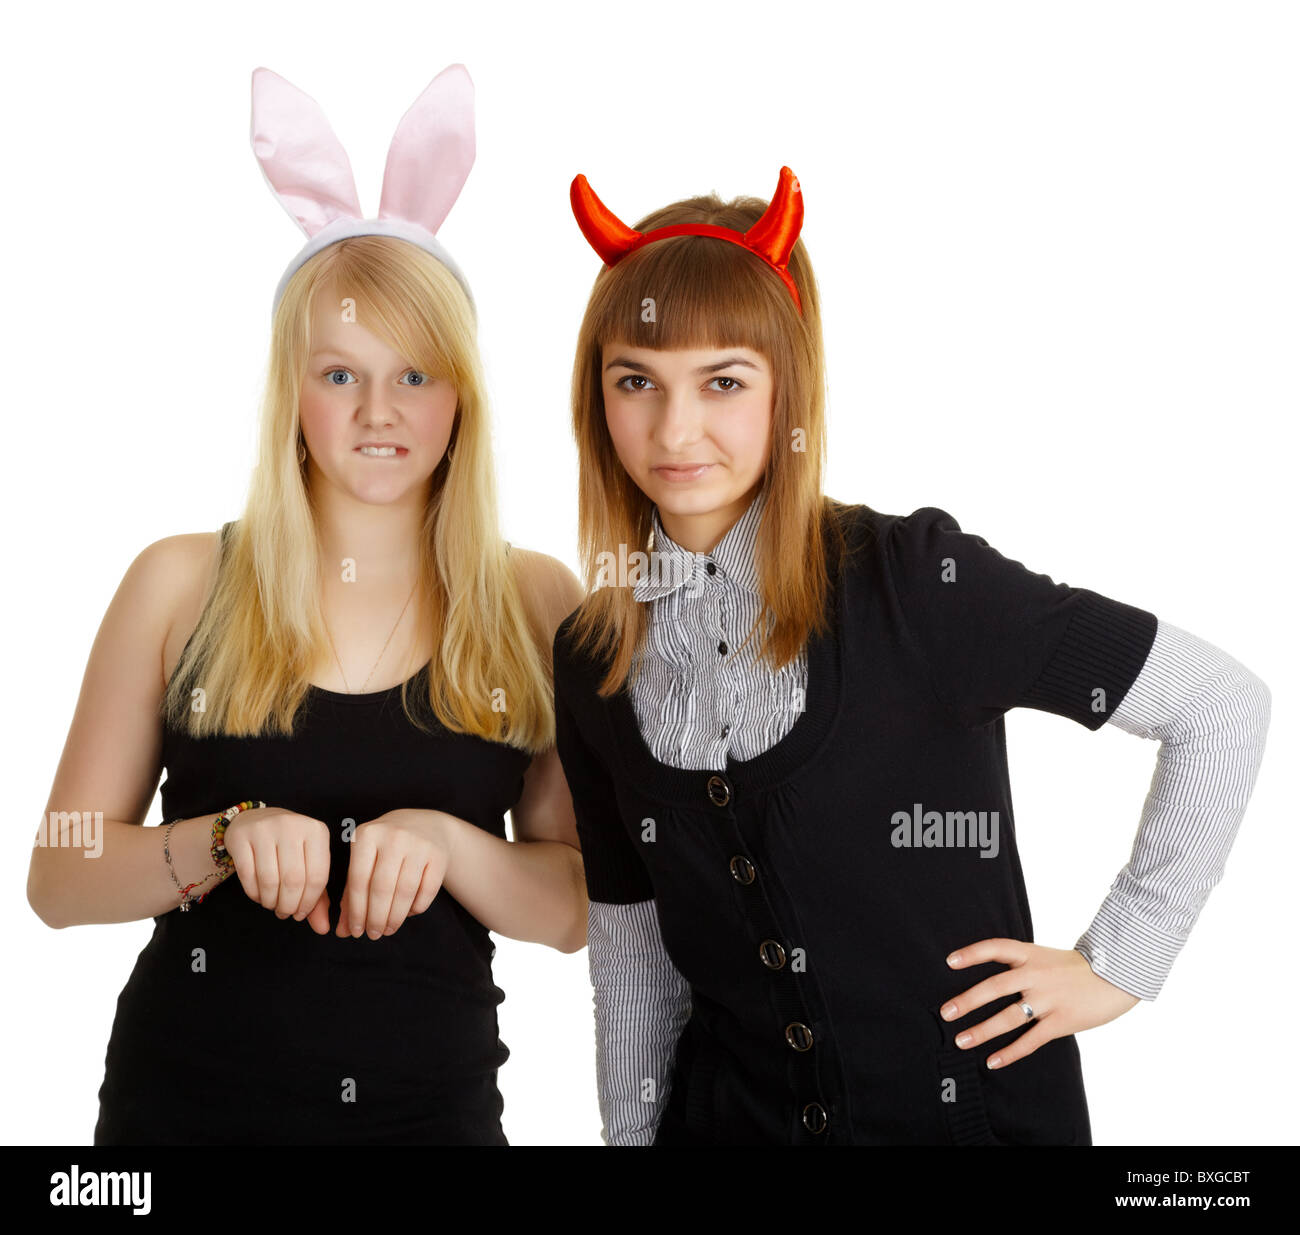 Zwei Mädchen - Freundinnen in Kostüme auf weißem Hintergrund  Stockfotografie - Alamy